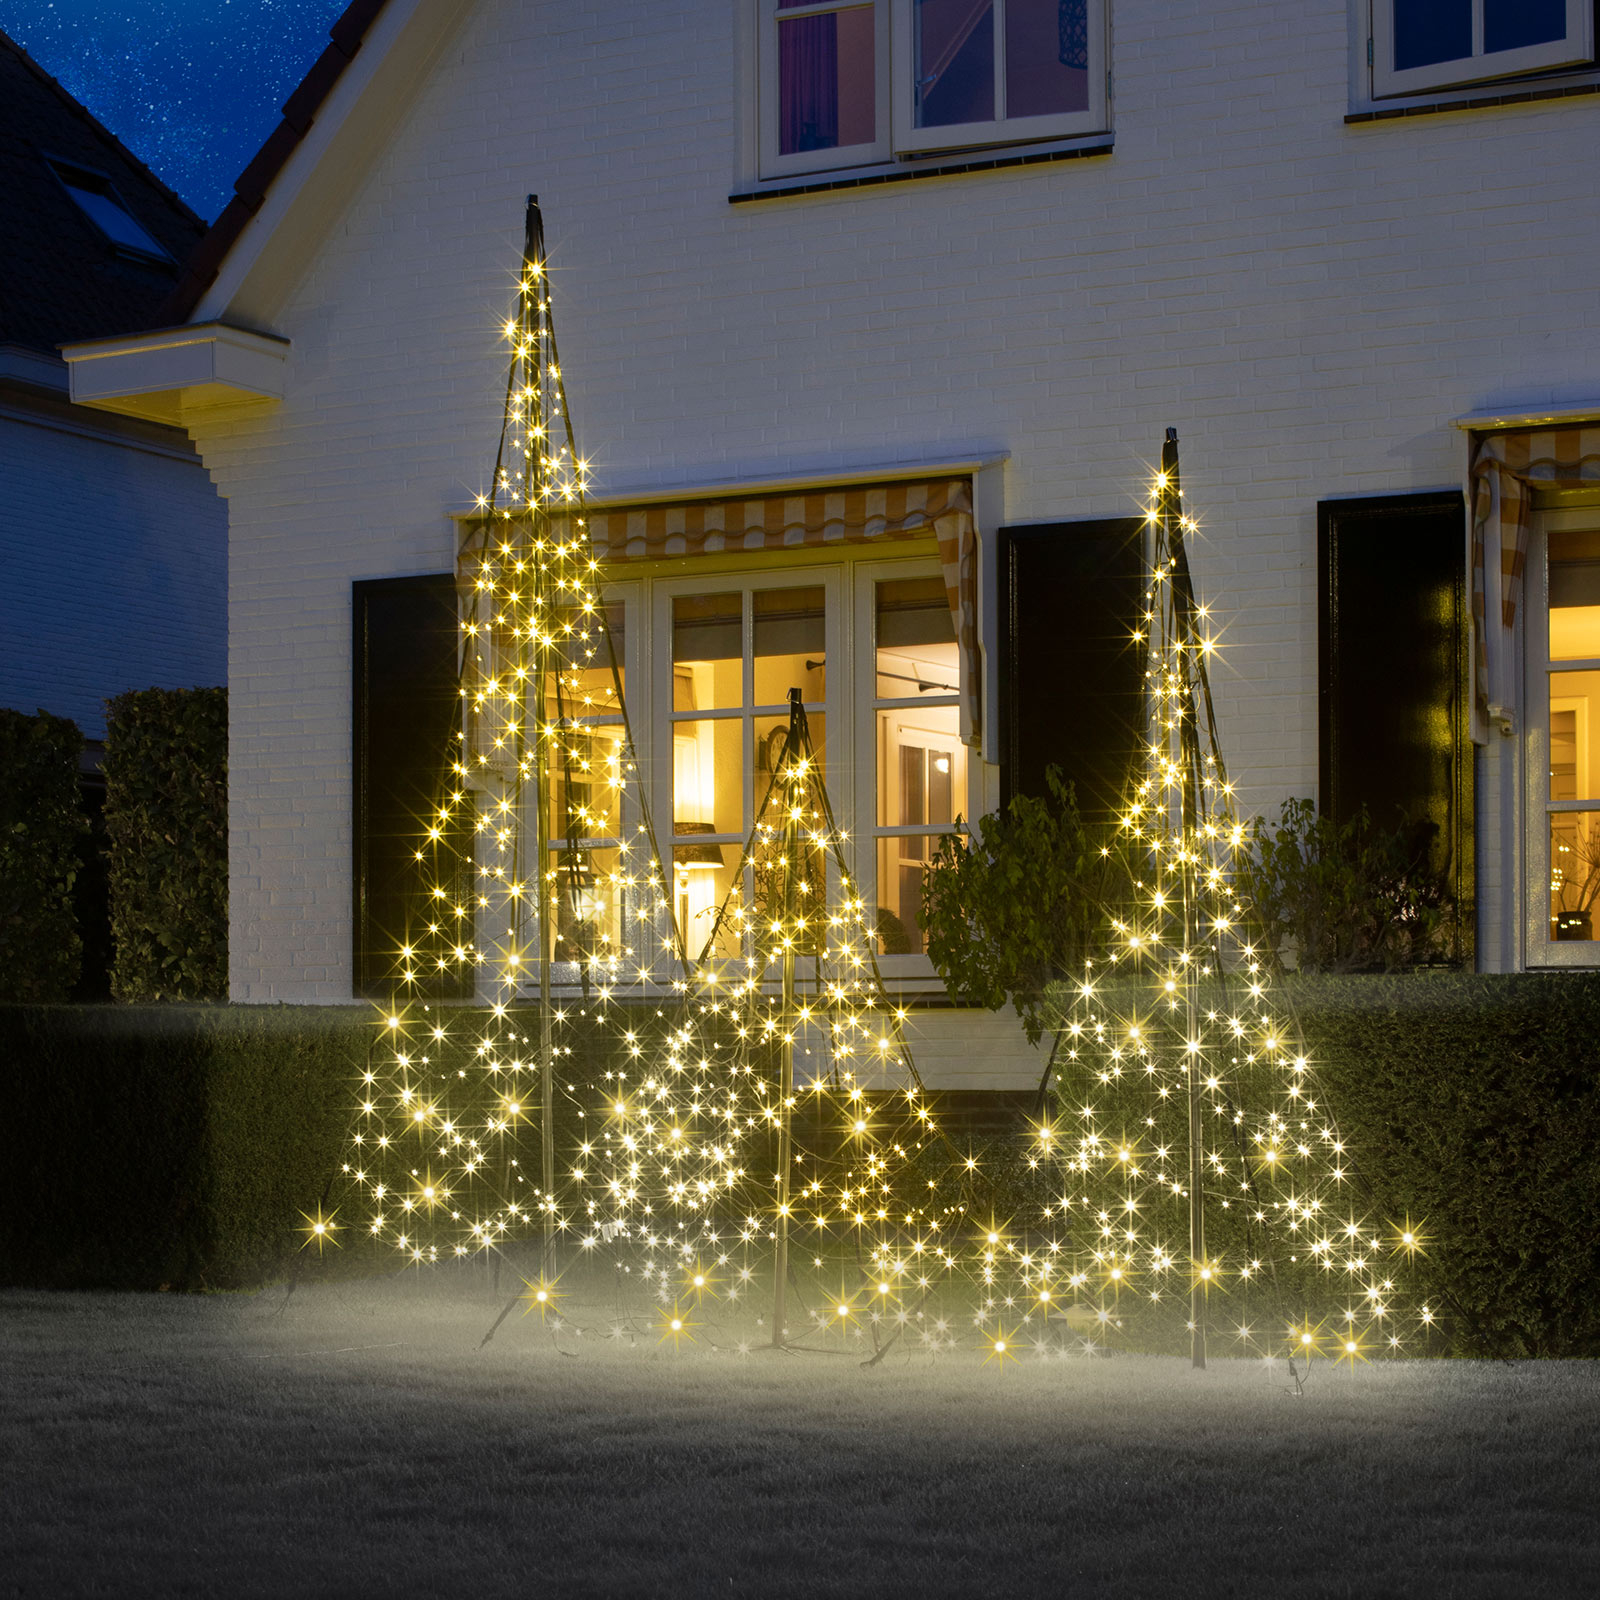 Fairybell Weihnachtsbaum mit Mast, 240 LEDs 150cm